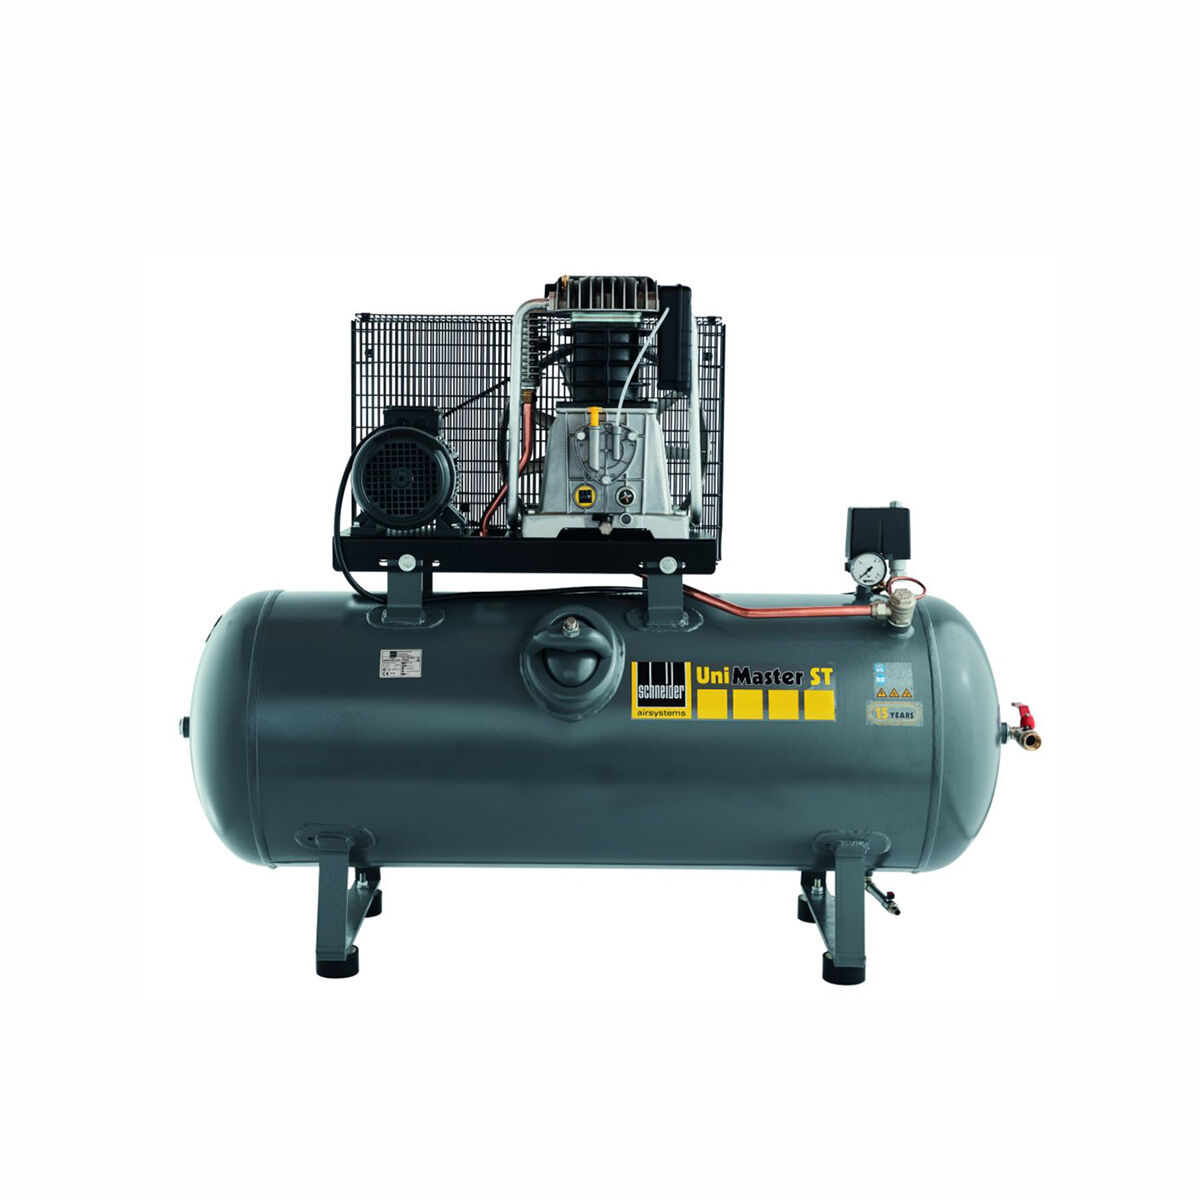 Schneider-Kompressor UNM STL 1000-10-270 C 1121570216